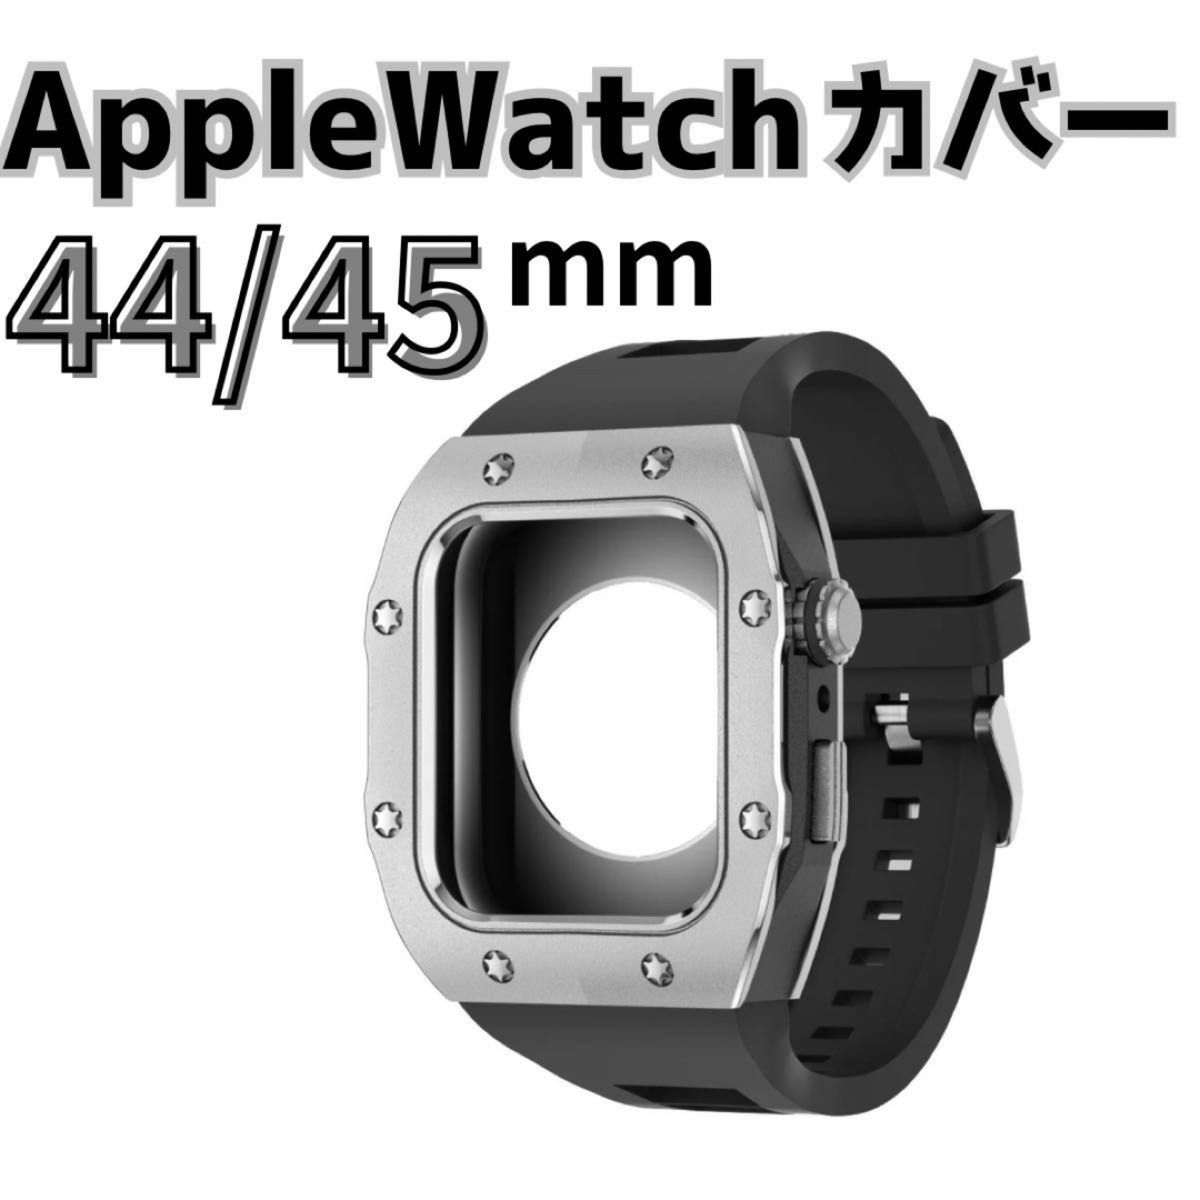 高品質 アップルウォッチ 黒 シルバー Apple Watch ラバーバンドケース カスタムメタルケース ラバーベルト 